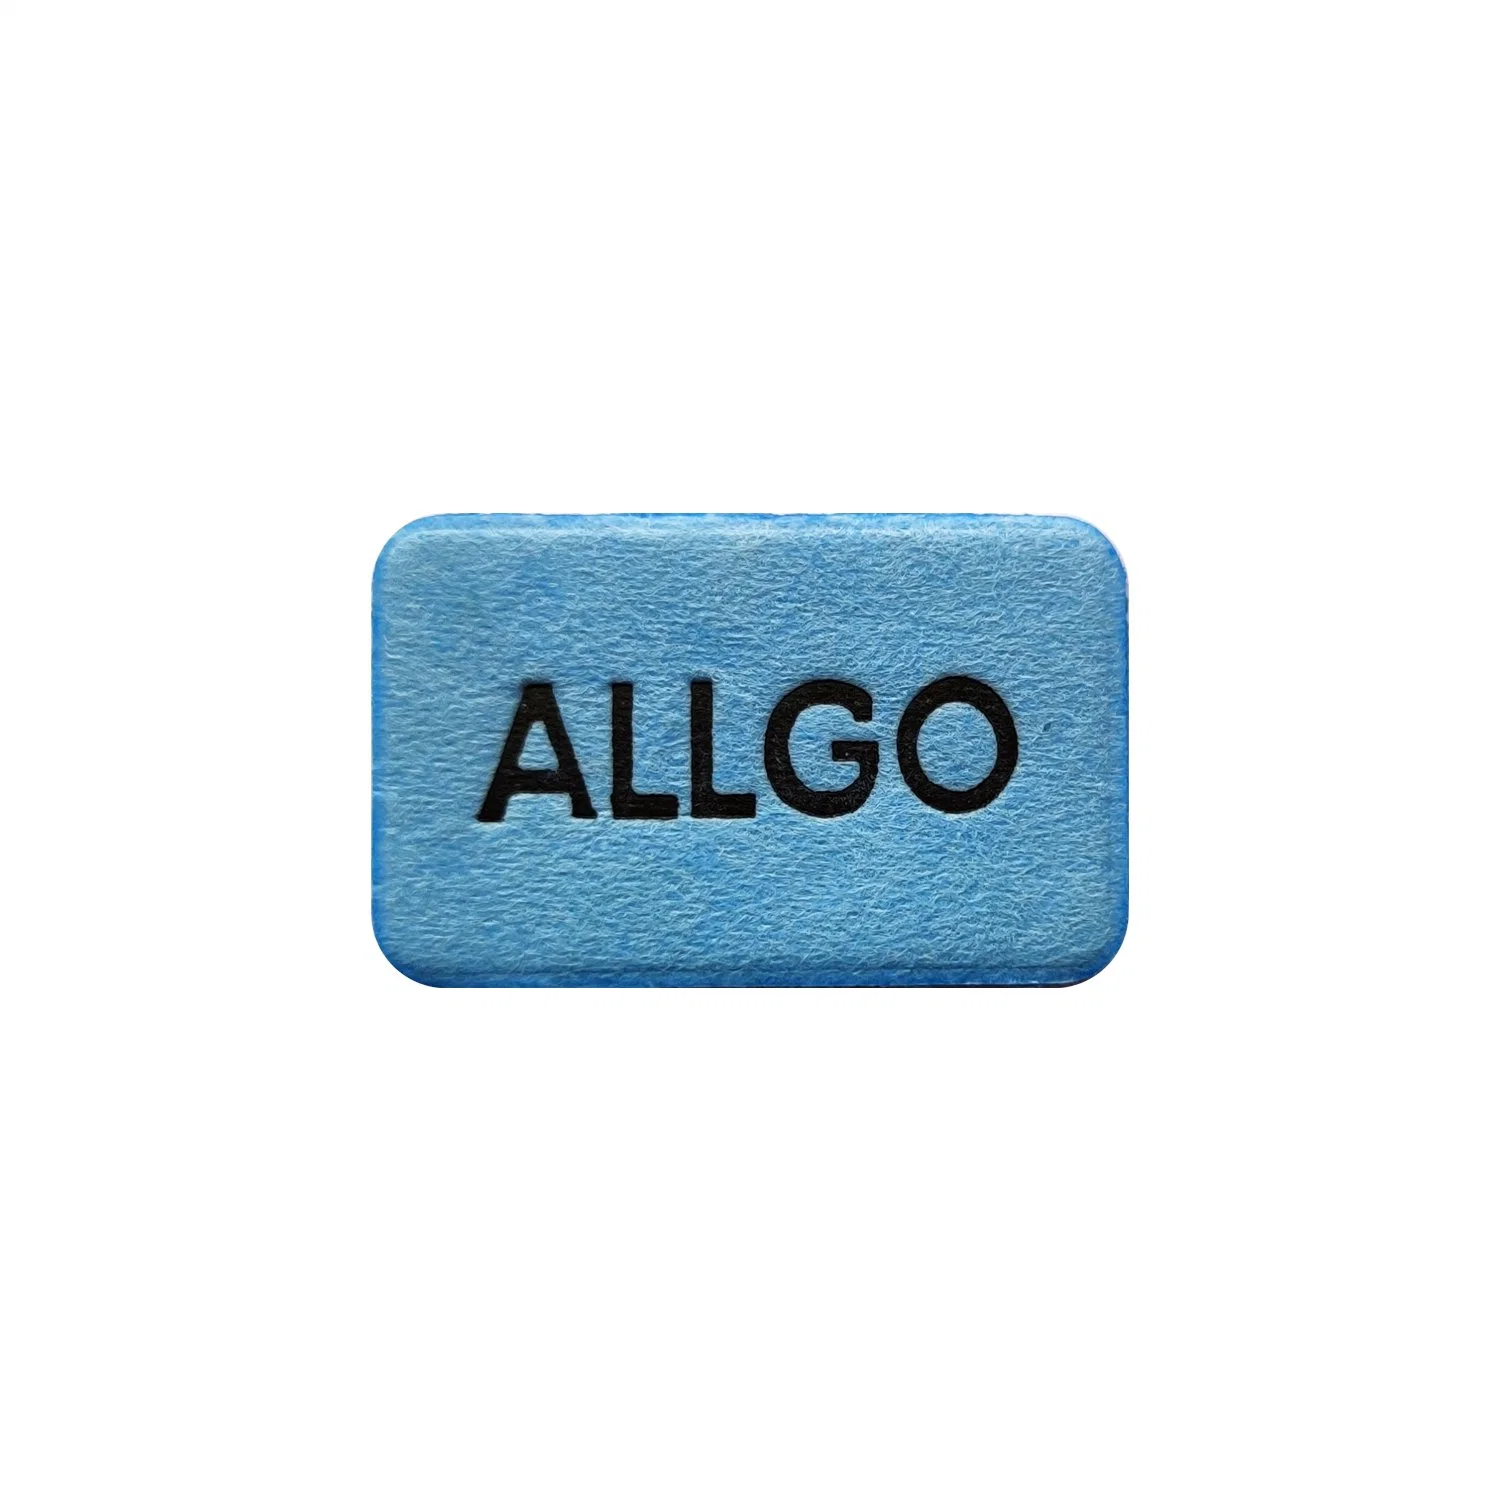 Allgo Pest Control Mosquito Killer Mosquito Mat Tablet Repellent